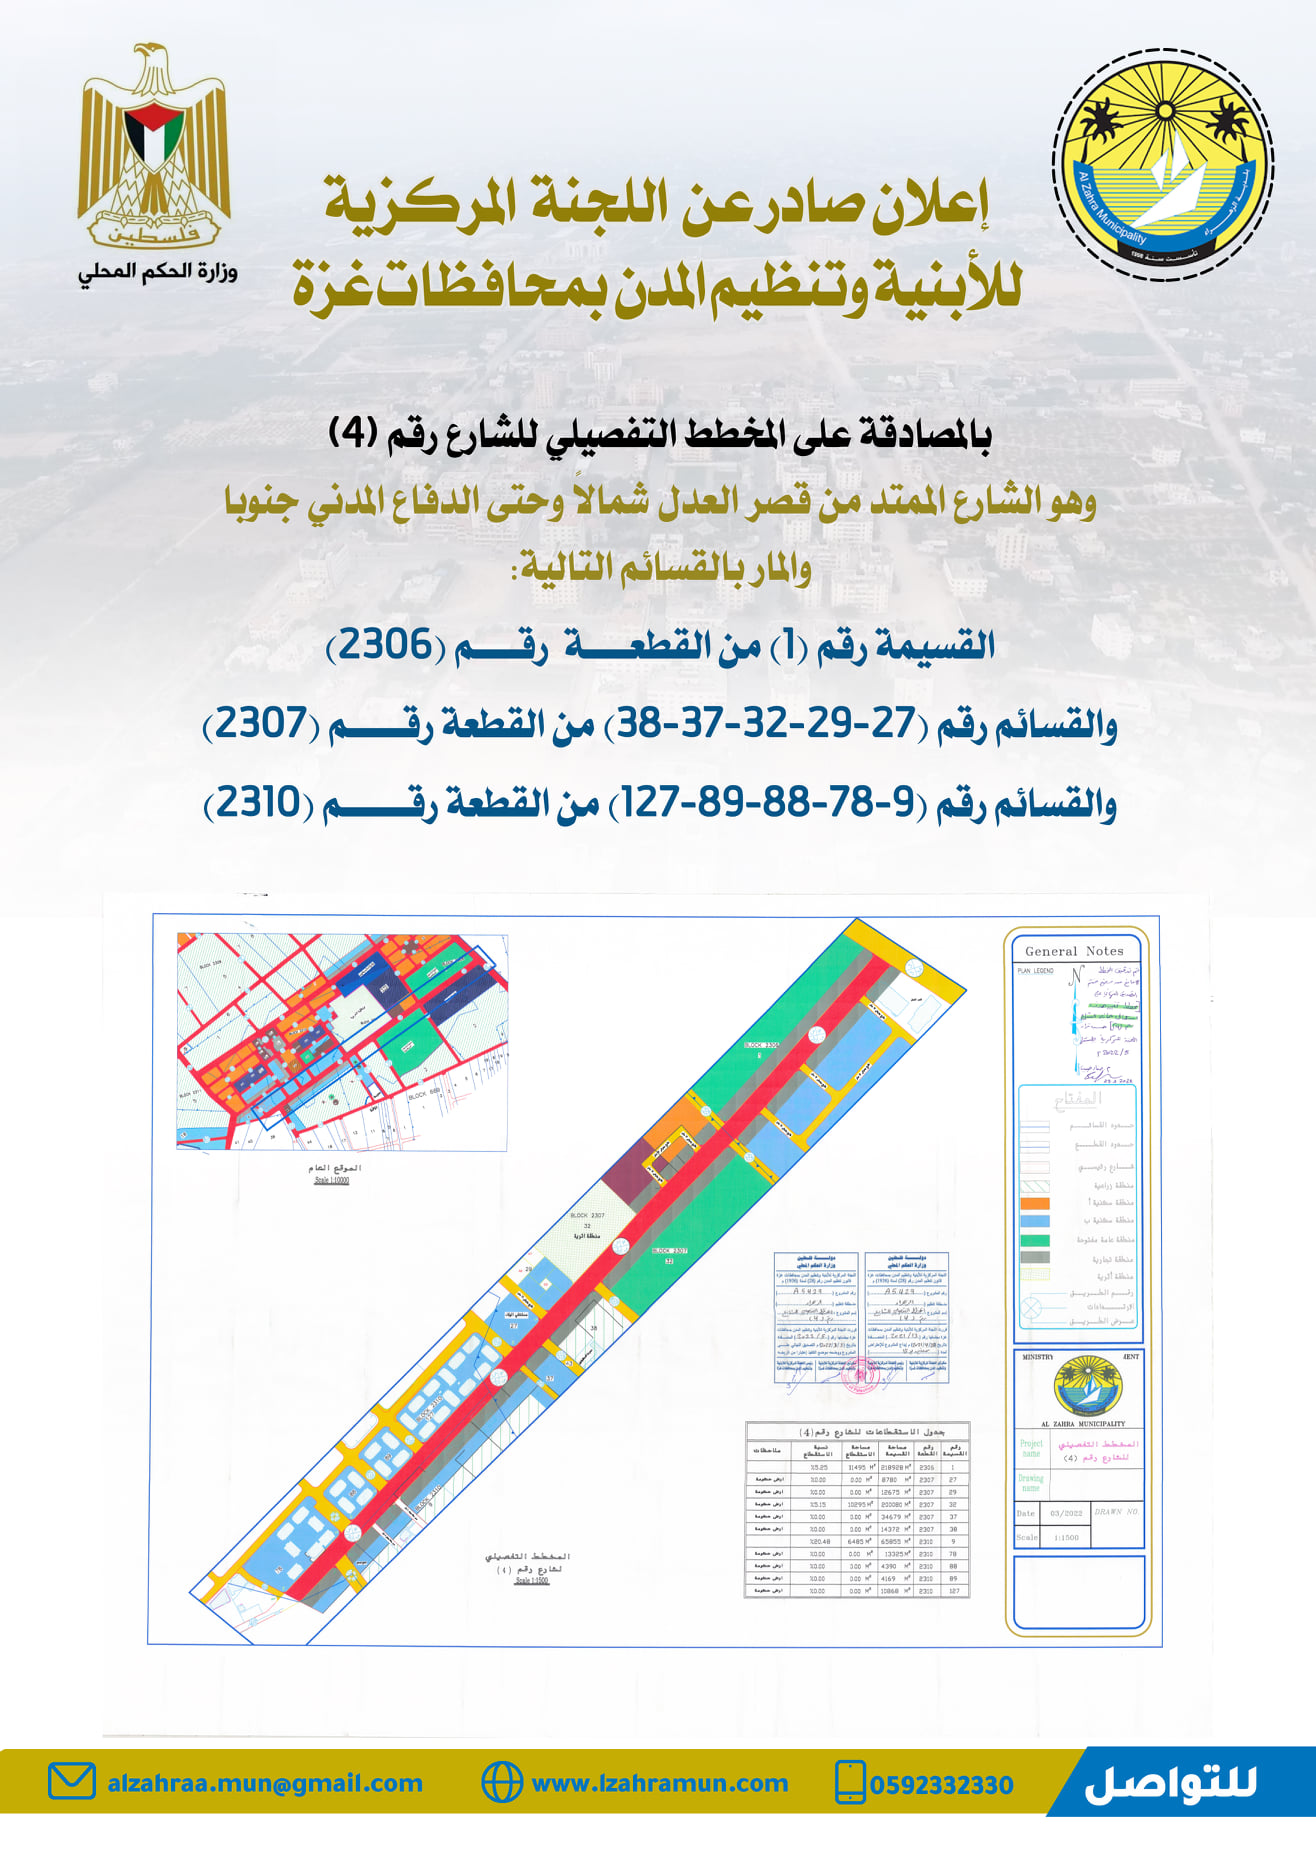 إعلان صادر عن اللجنة المركزية للأبنية وتنظيم المدن  بالمصادقة على المخطط التفصيلي للشارع رقم (4)